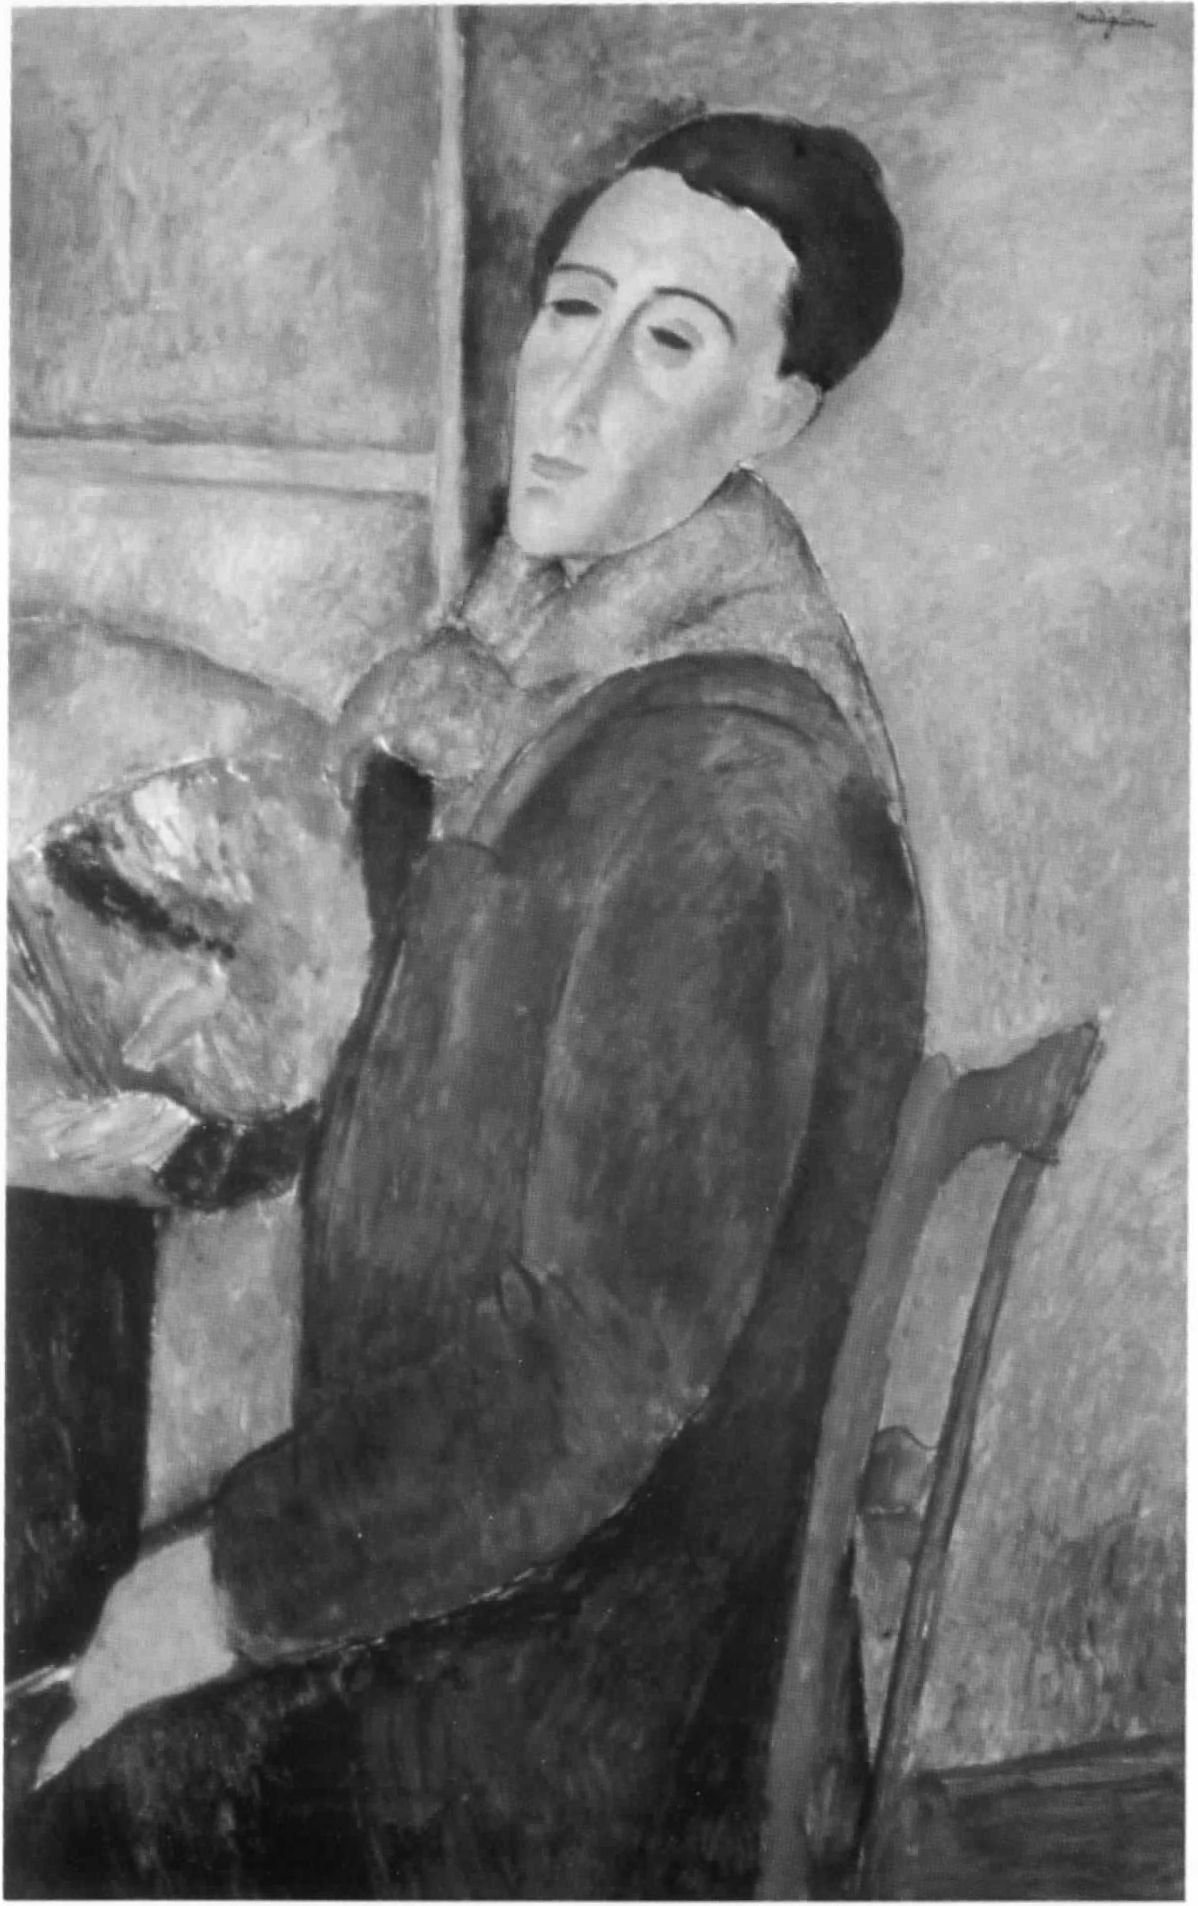 Автопортрет Модильяни, написанный в 1919 году